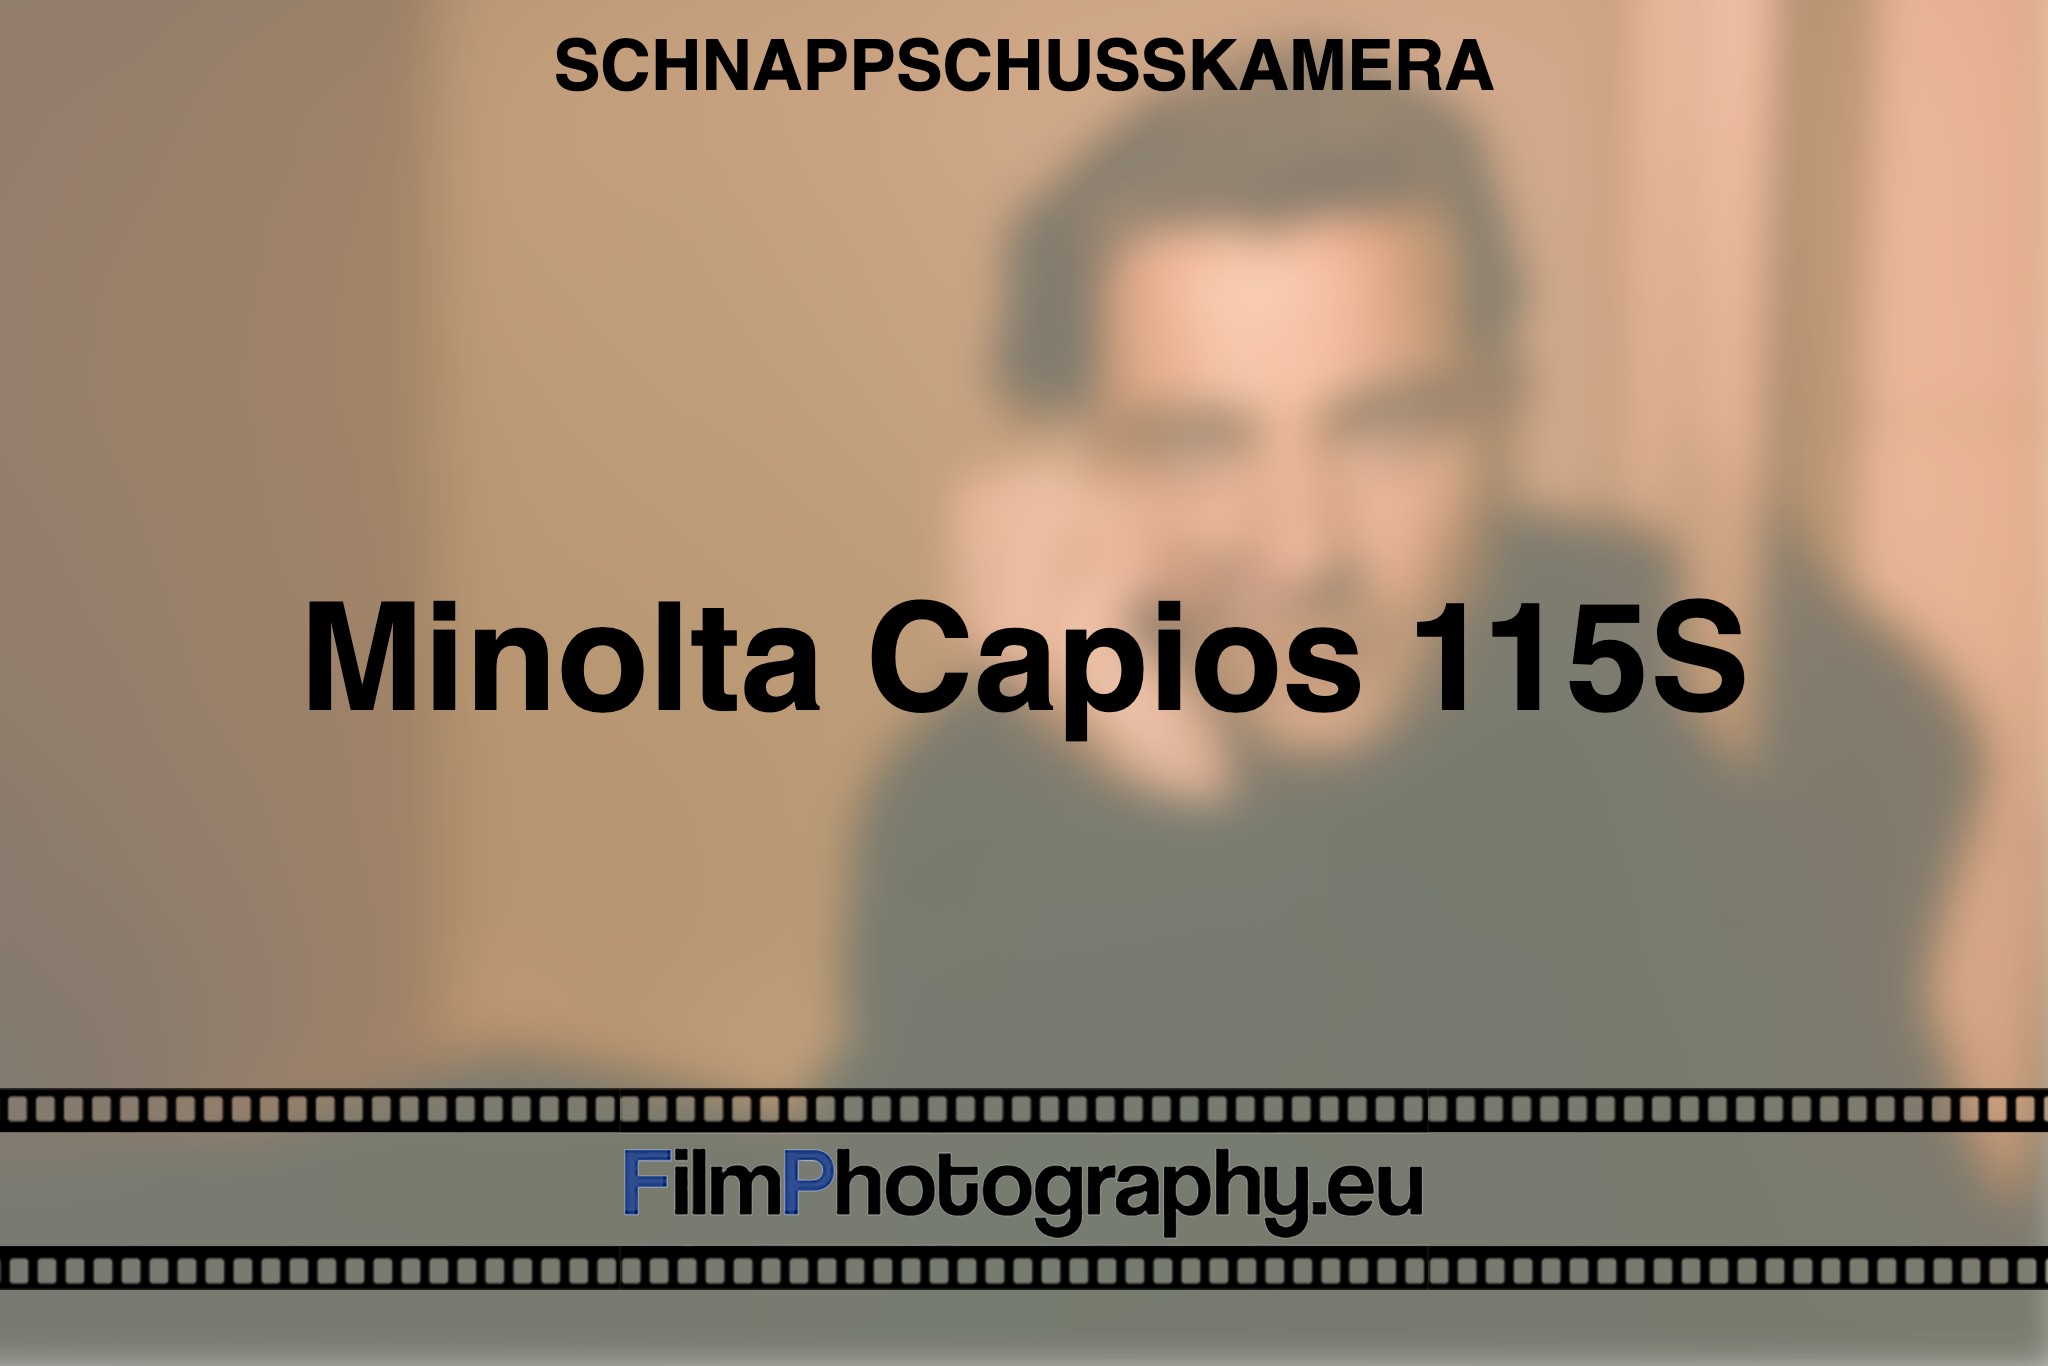 minolta-capios-115s-schnappschusskamera-bnv